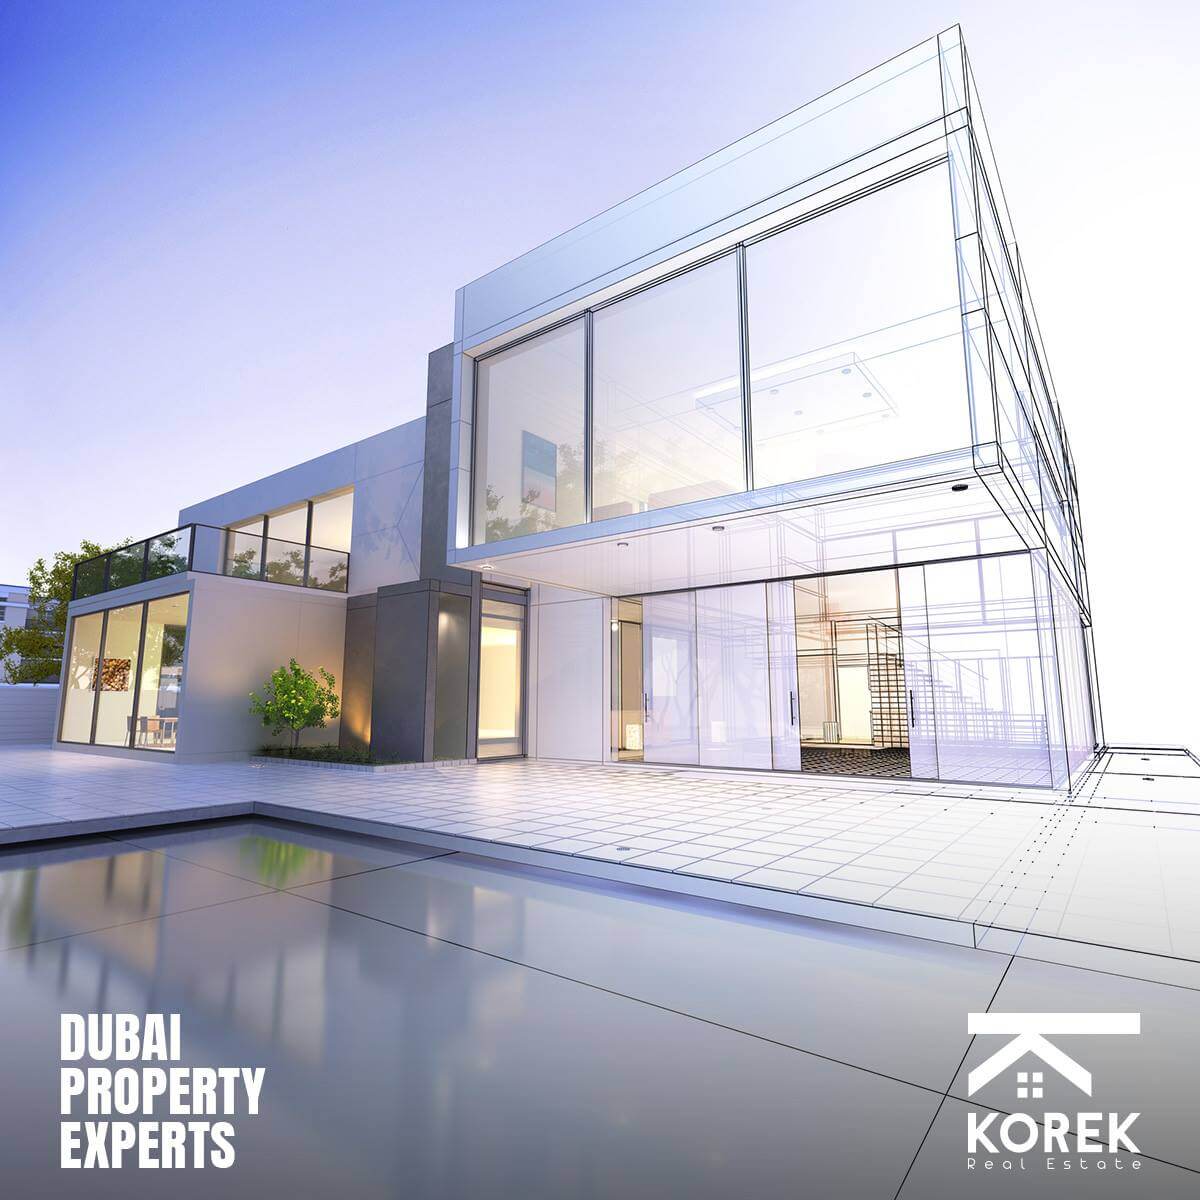 Korek Real Estate